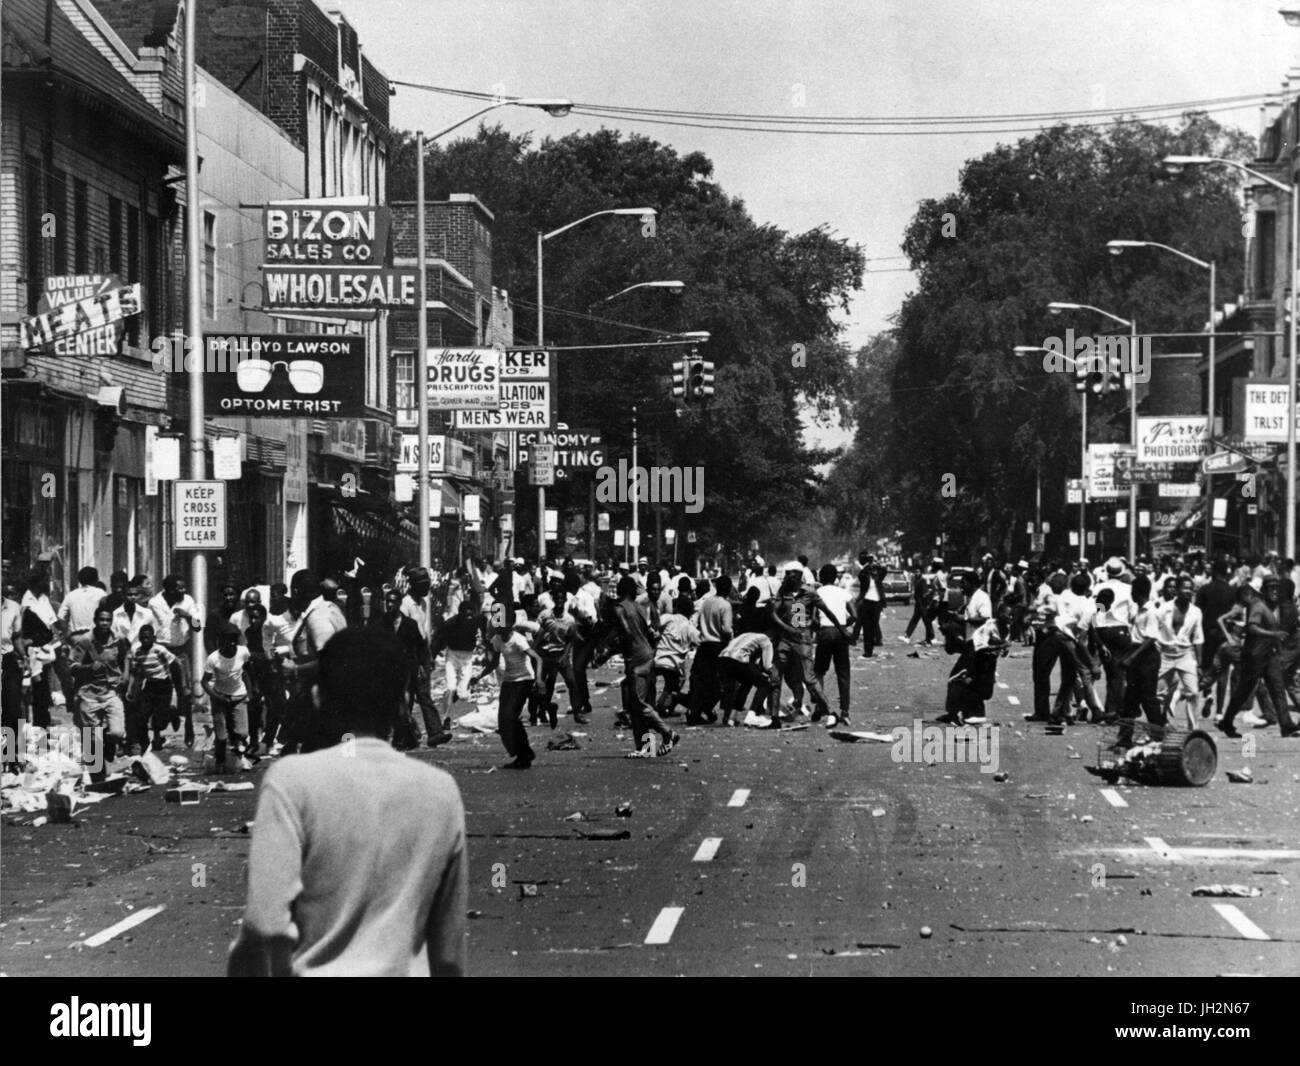 Julio 12, 2017 - archivo - este 23 de julio se conmemora el 50 aniversario de los disturbios de Detroit 1967, también conocida como la calle 12, un violento motín el desorden público que se convirtió en un disturbio civil en Detroit, Michigan. Comenzó en las primeras horas de la mañana del domingo, 23 de julio de 1967. El Evento precipitante fue una redada policial sin licencia de una barra después del horario de trabajo, conocida entonces como un ciego de cerdo, justo al norte de la esquina de la 12th Street (hoy Rosa Parks Boulevard) y Clairmount Avenue en la ciudad cerca del lado oeste. Los enfrentamientos con la policía y mecenas de los observadores en la calle evolucionó hasta convertirse en uno de los más mortíferos y m Foto de stock